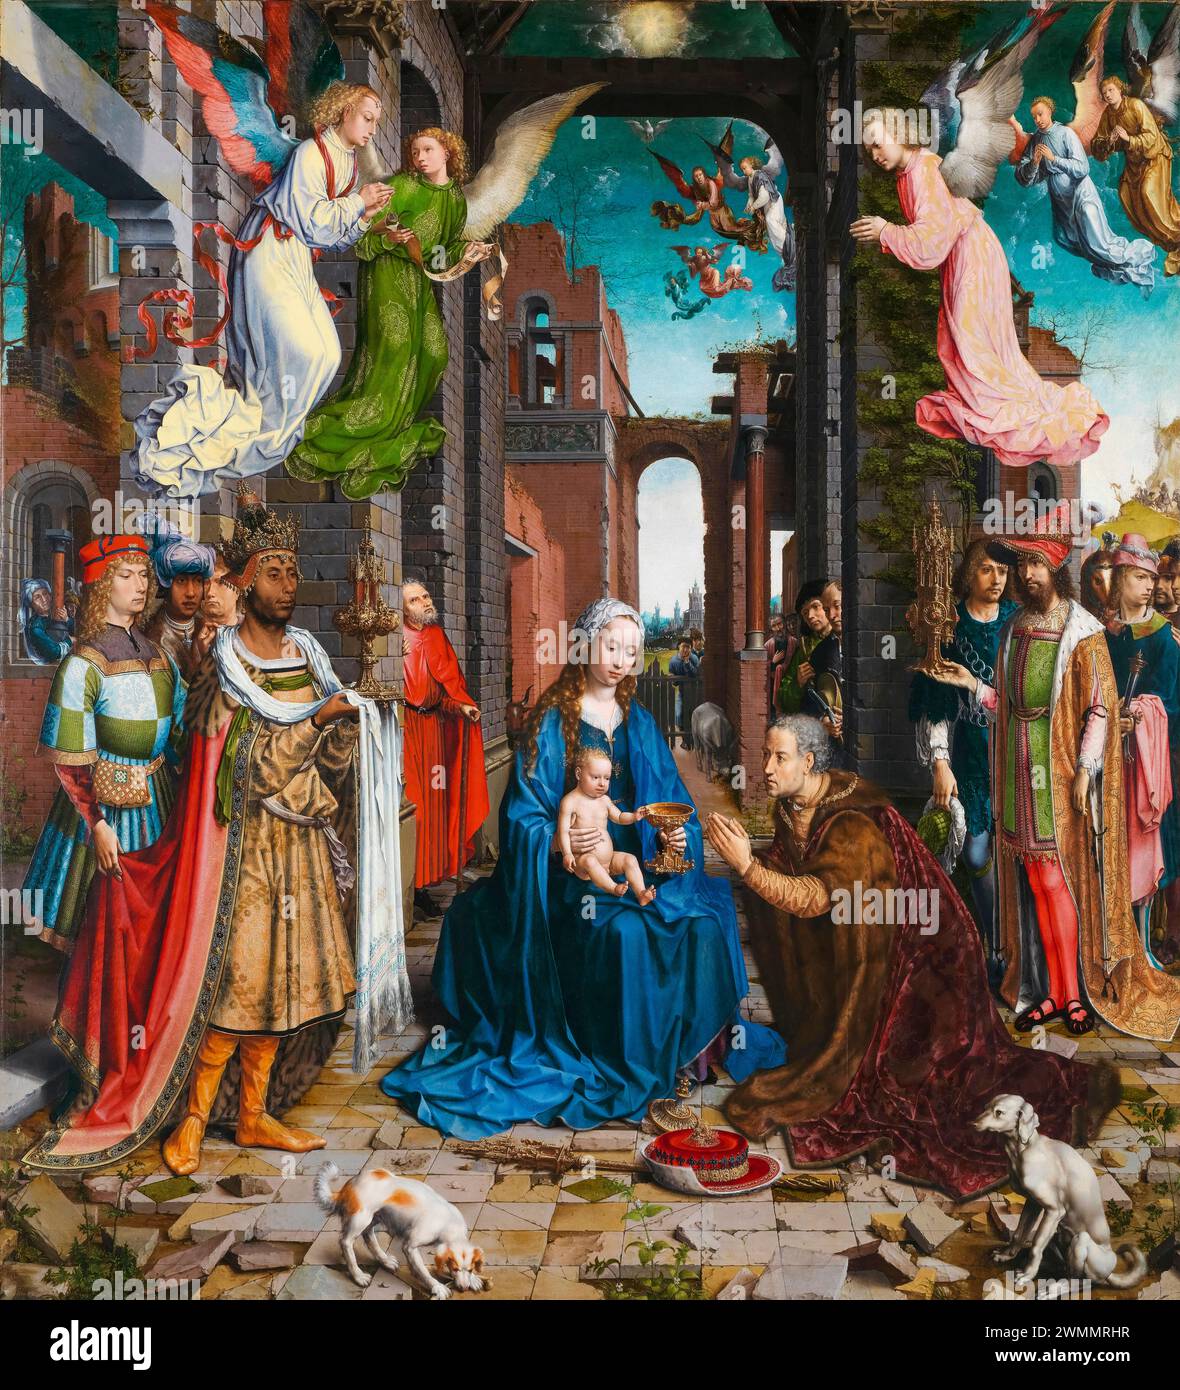 Jan Gossaert, L'Adoration des Rois, peinture à l'huile sur chêne, 1510-1515 Banque D'Images